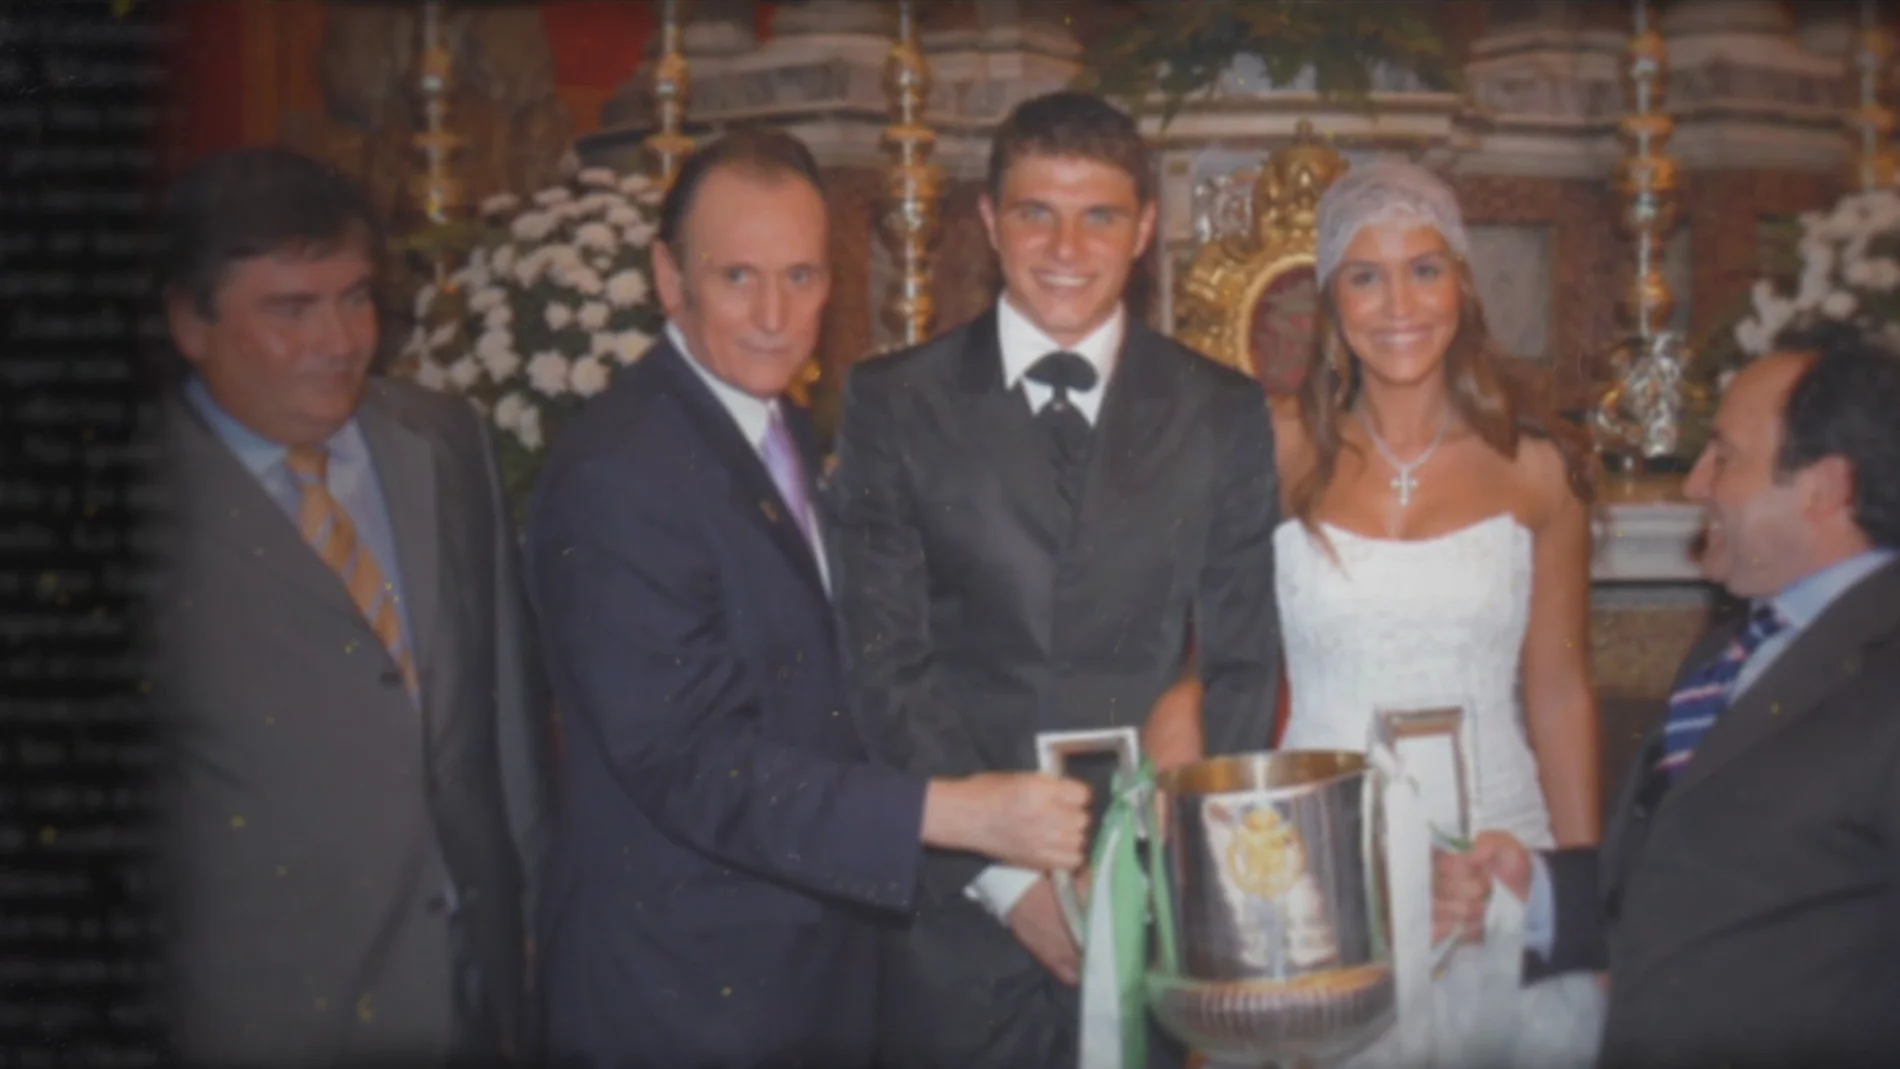 La ocurrencia de Manuel Ruiz de Lopera en la boda de Joaquín y Susana: “Lo que le interesaba era sacar la Copa en el altar casándome” 